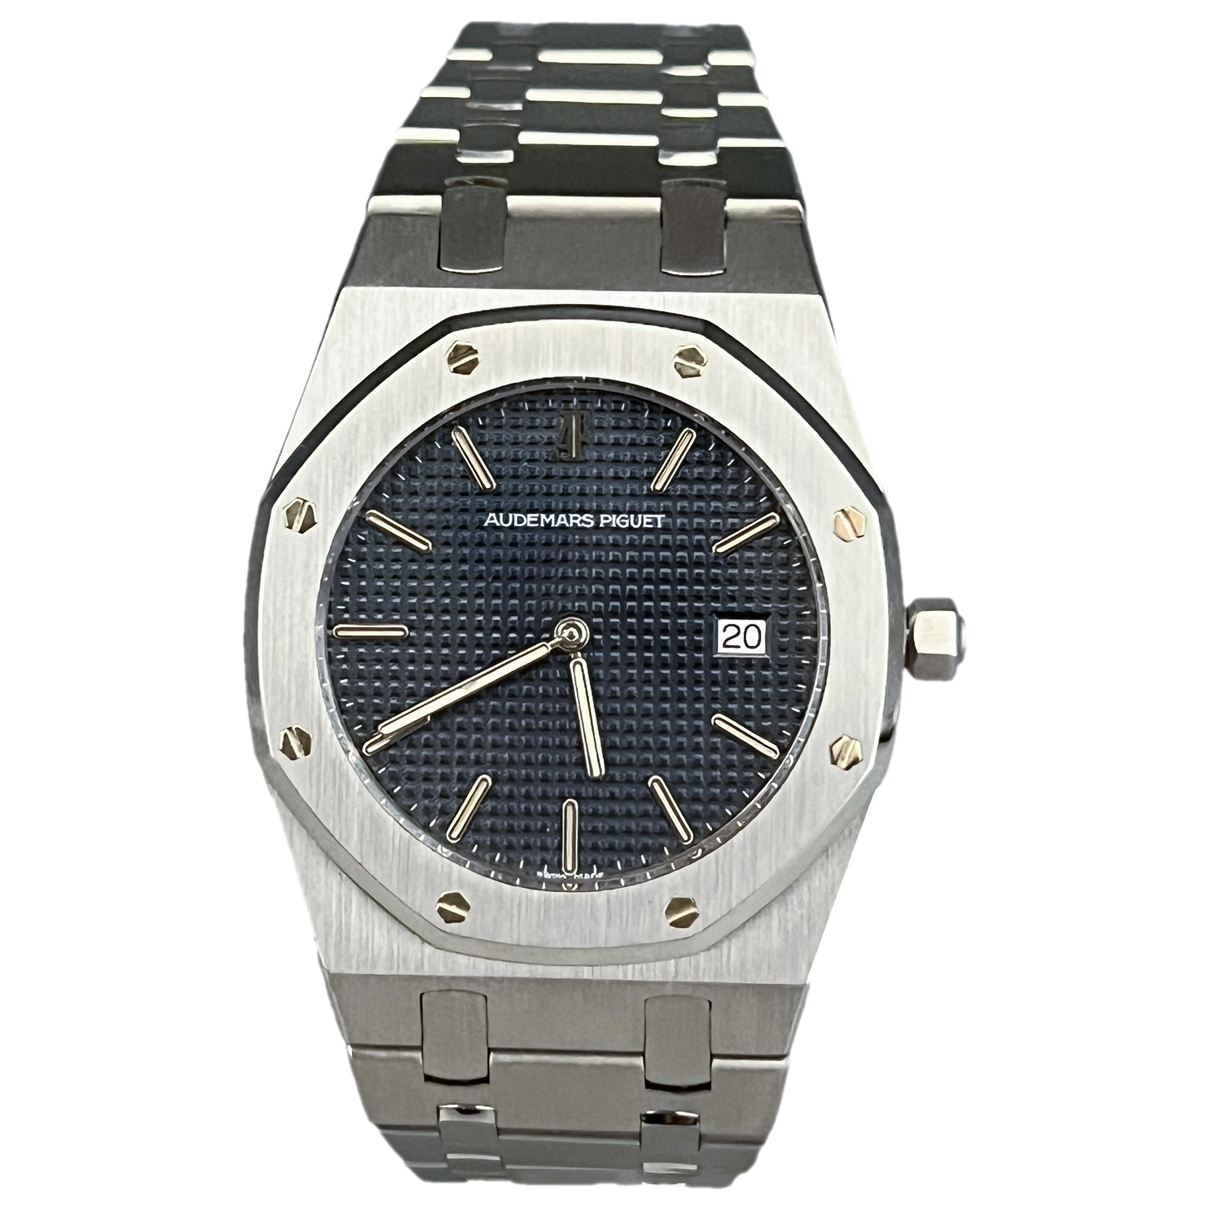 image of Audemars Piguet Royal Oak watch